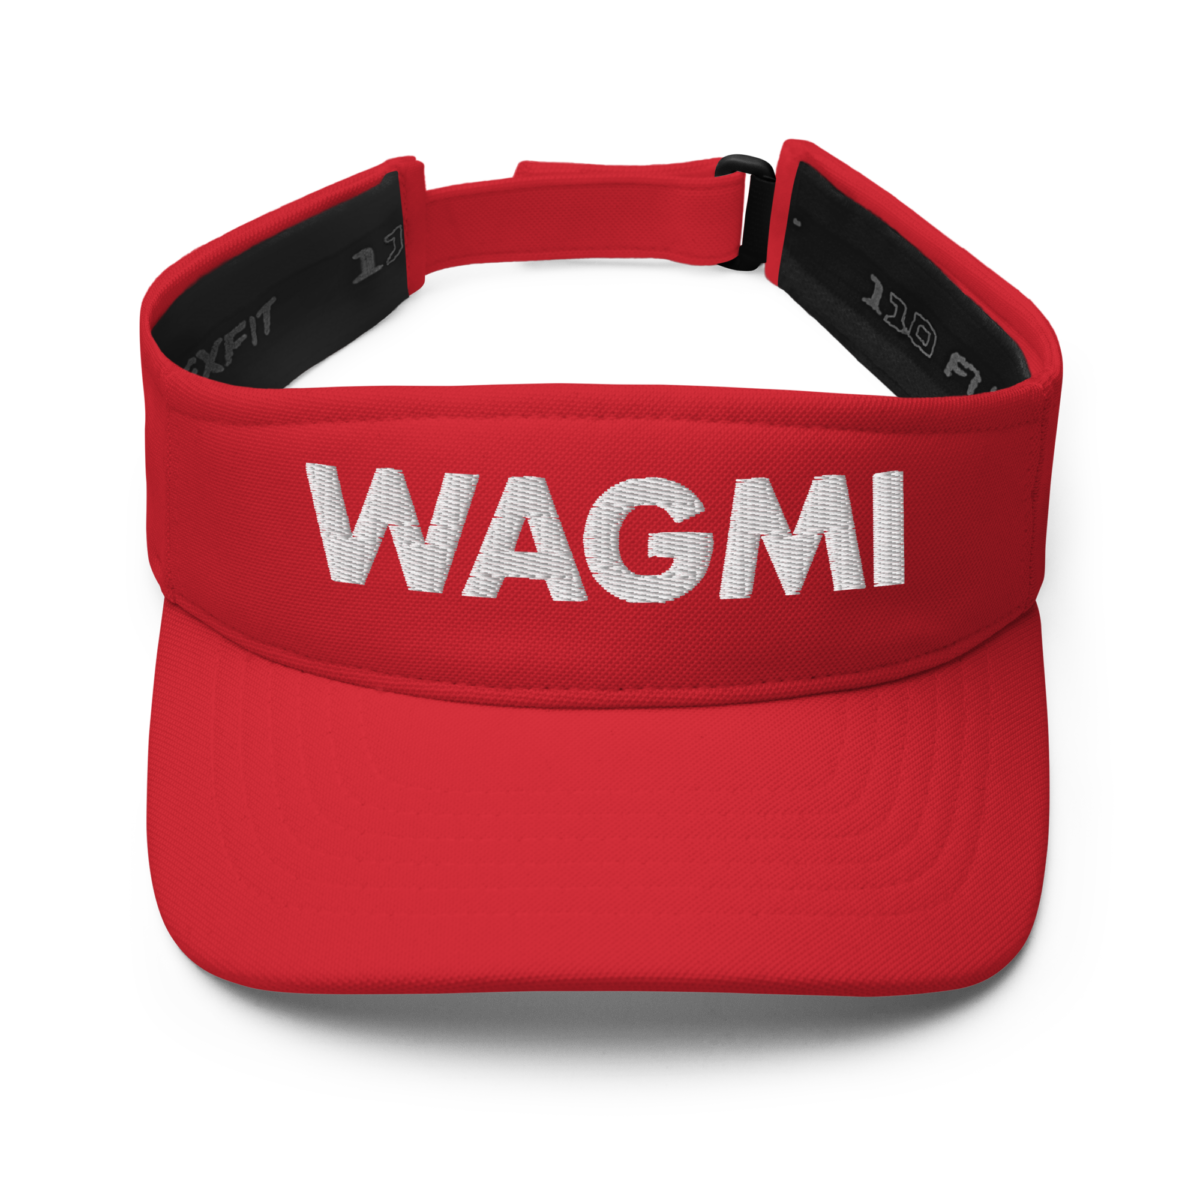 visor red front 62e199e498af5 - WAGMI Visor